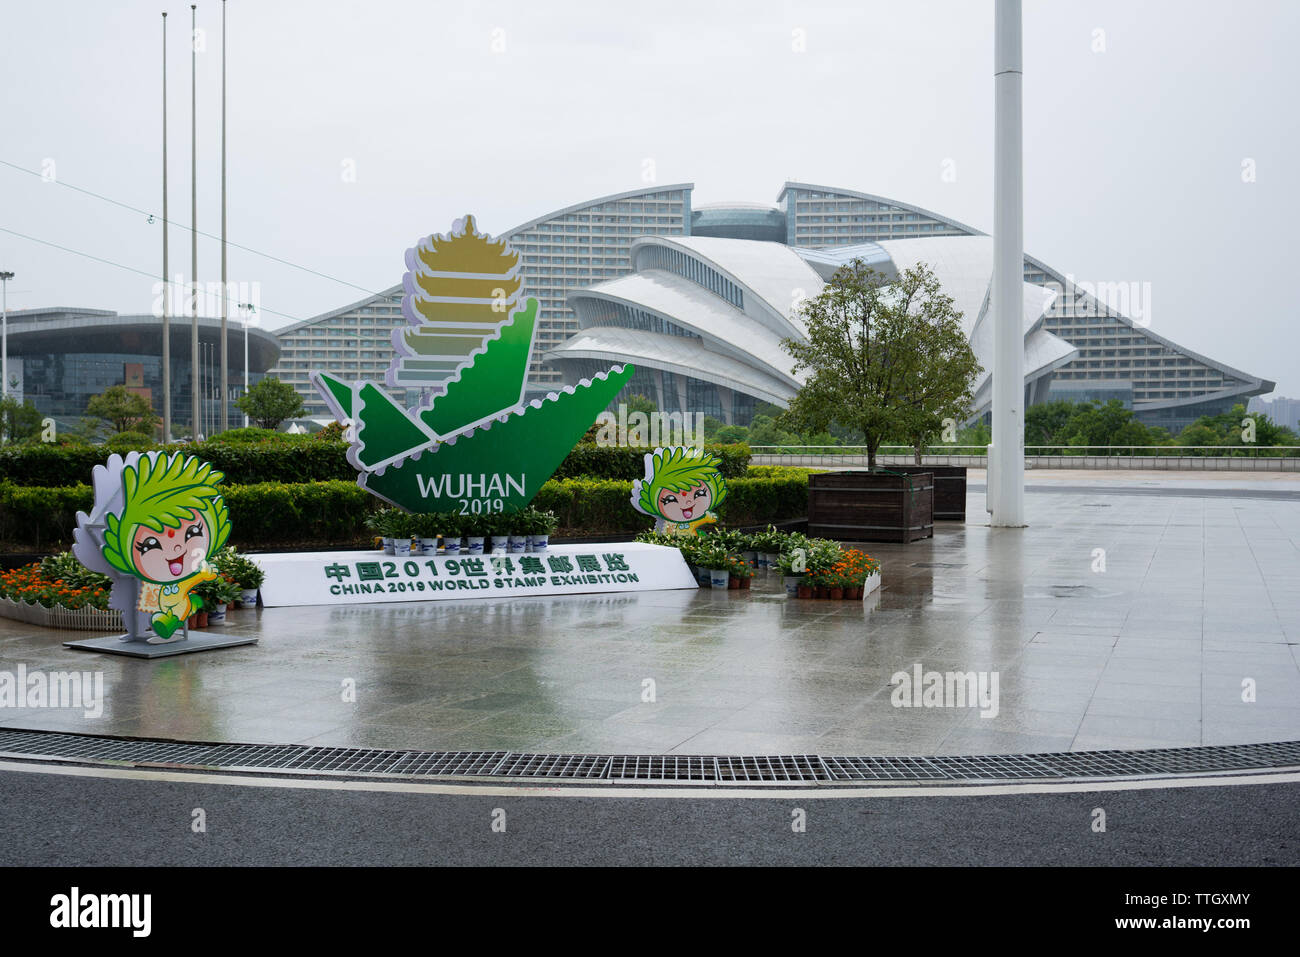 16 juin 2019, Wuhan Chine : Vue extérieure de la Shanghai International Expo Center et signe pour la Chine 2019 exposition de timbres du monde Banque D'Images